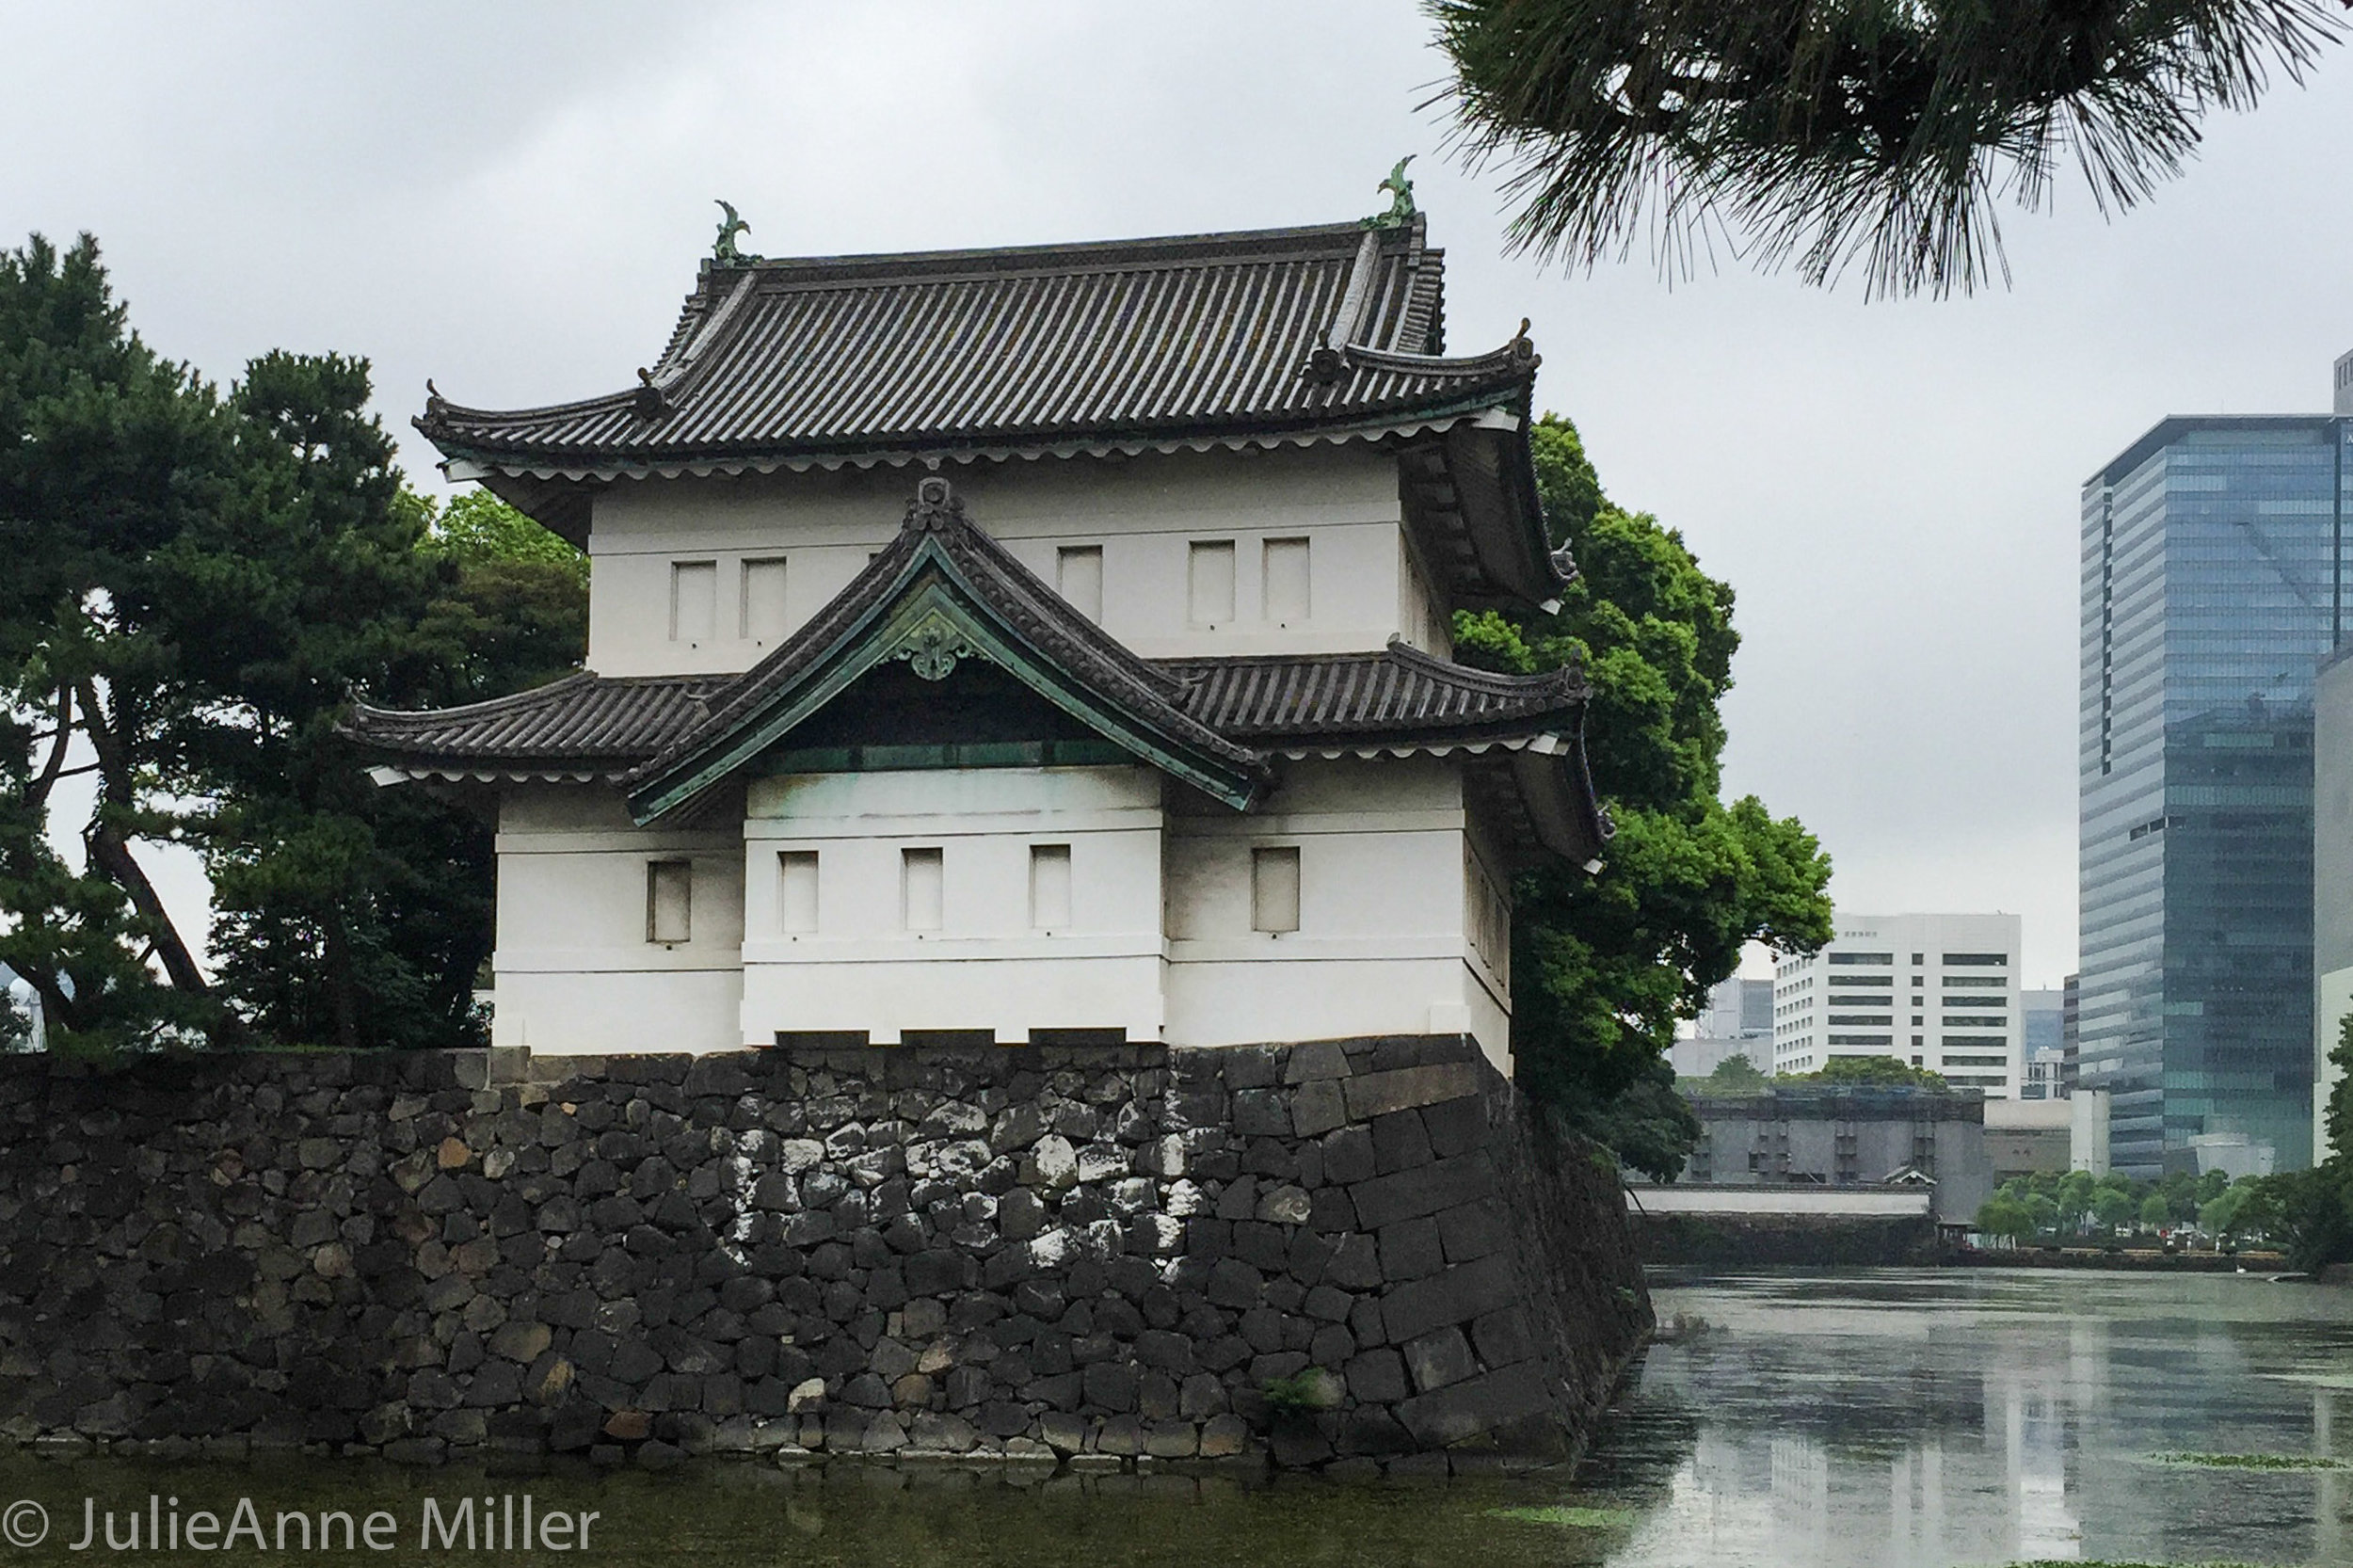 เกี่ยวกับเส้นทางวิ่งของ Imperial Palace ในญี่ปุ่น